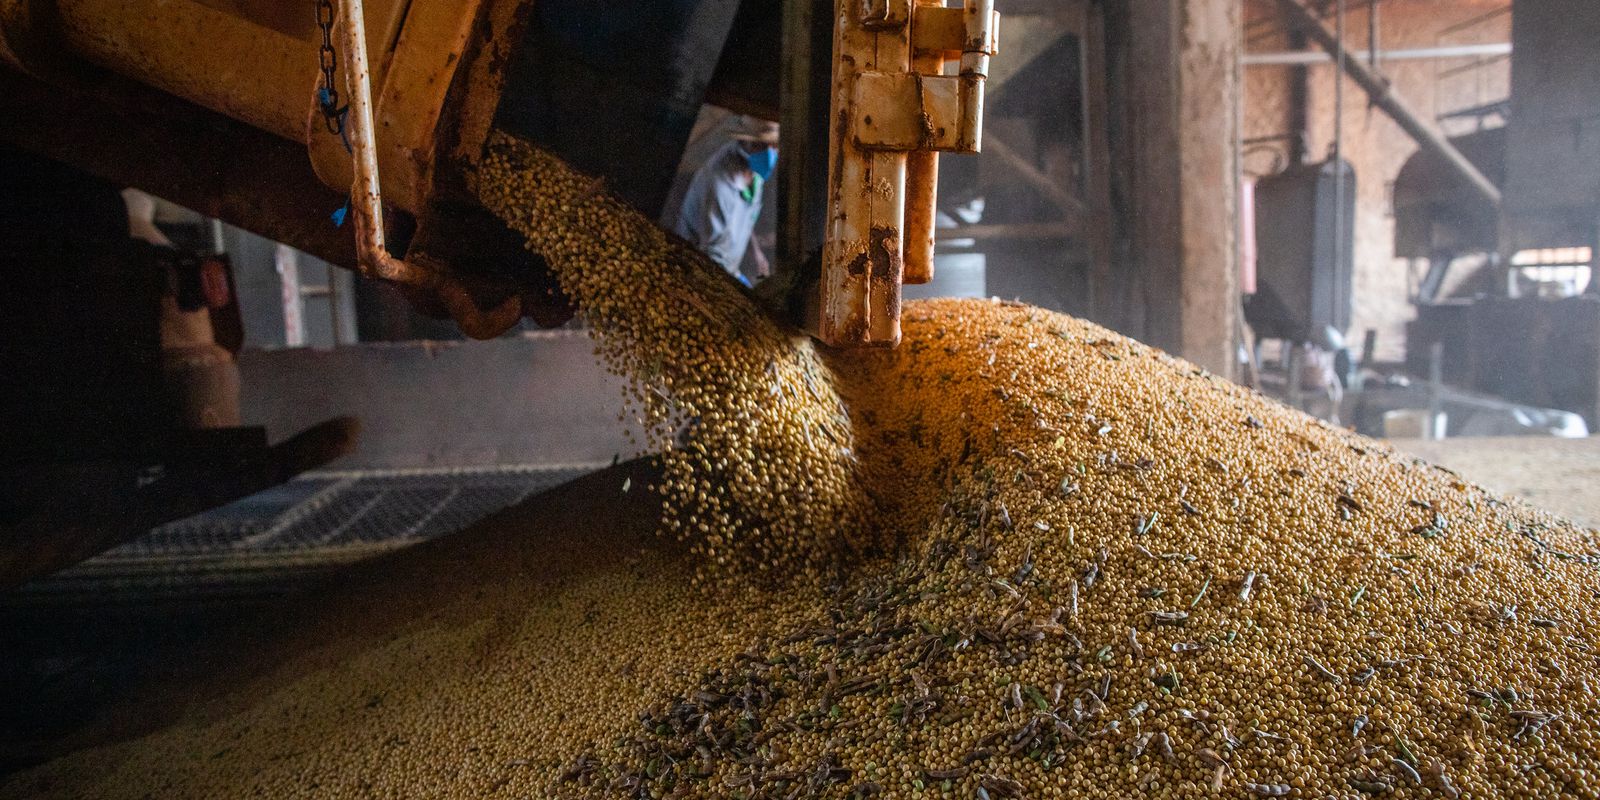 Grain harvest should reach 271.3 million tons, estimates Conab